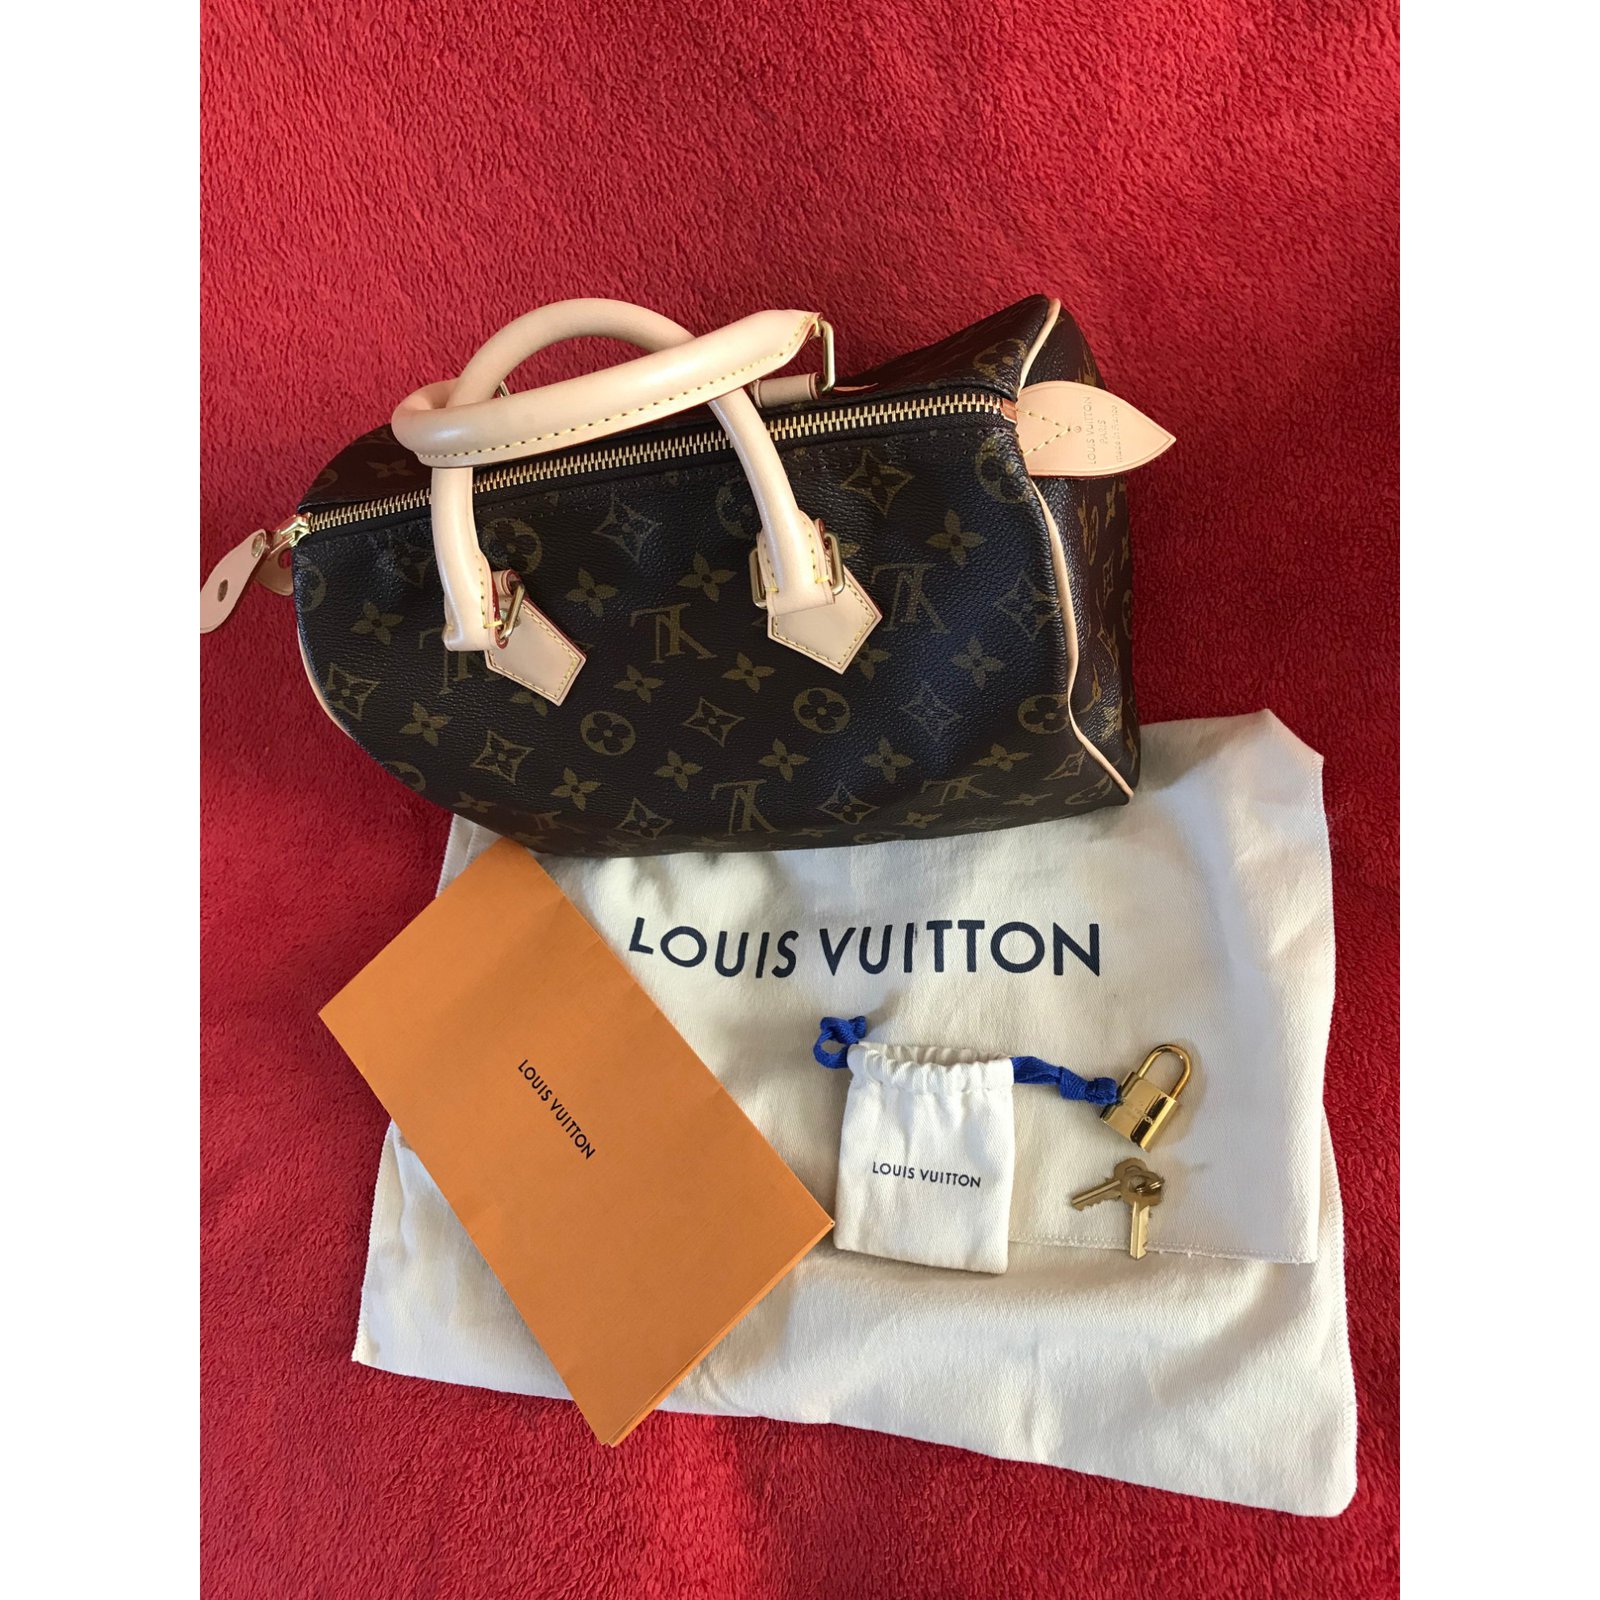 Shop Louis Vuitton SPEEDY Speedy 25 (M41109) by babybbb